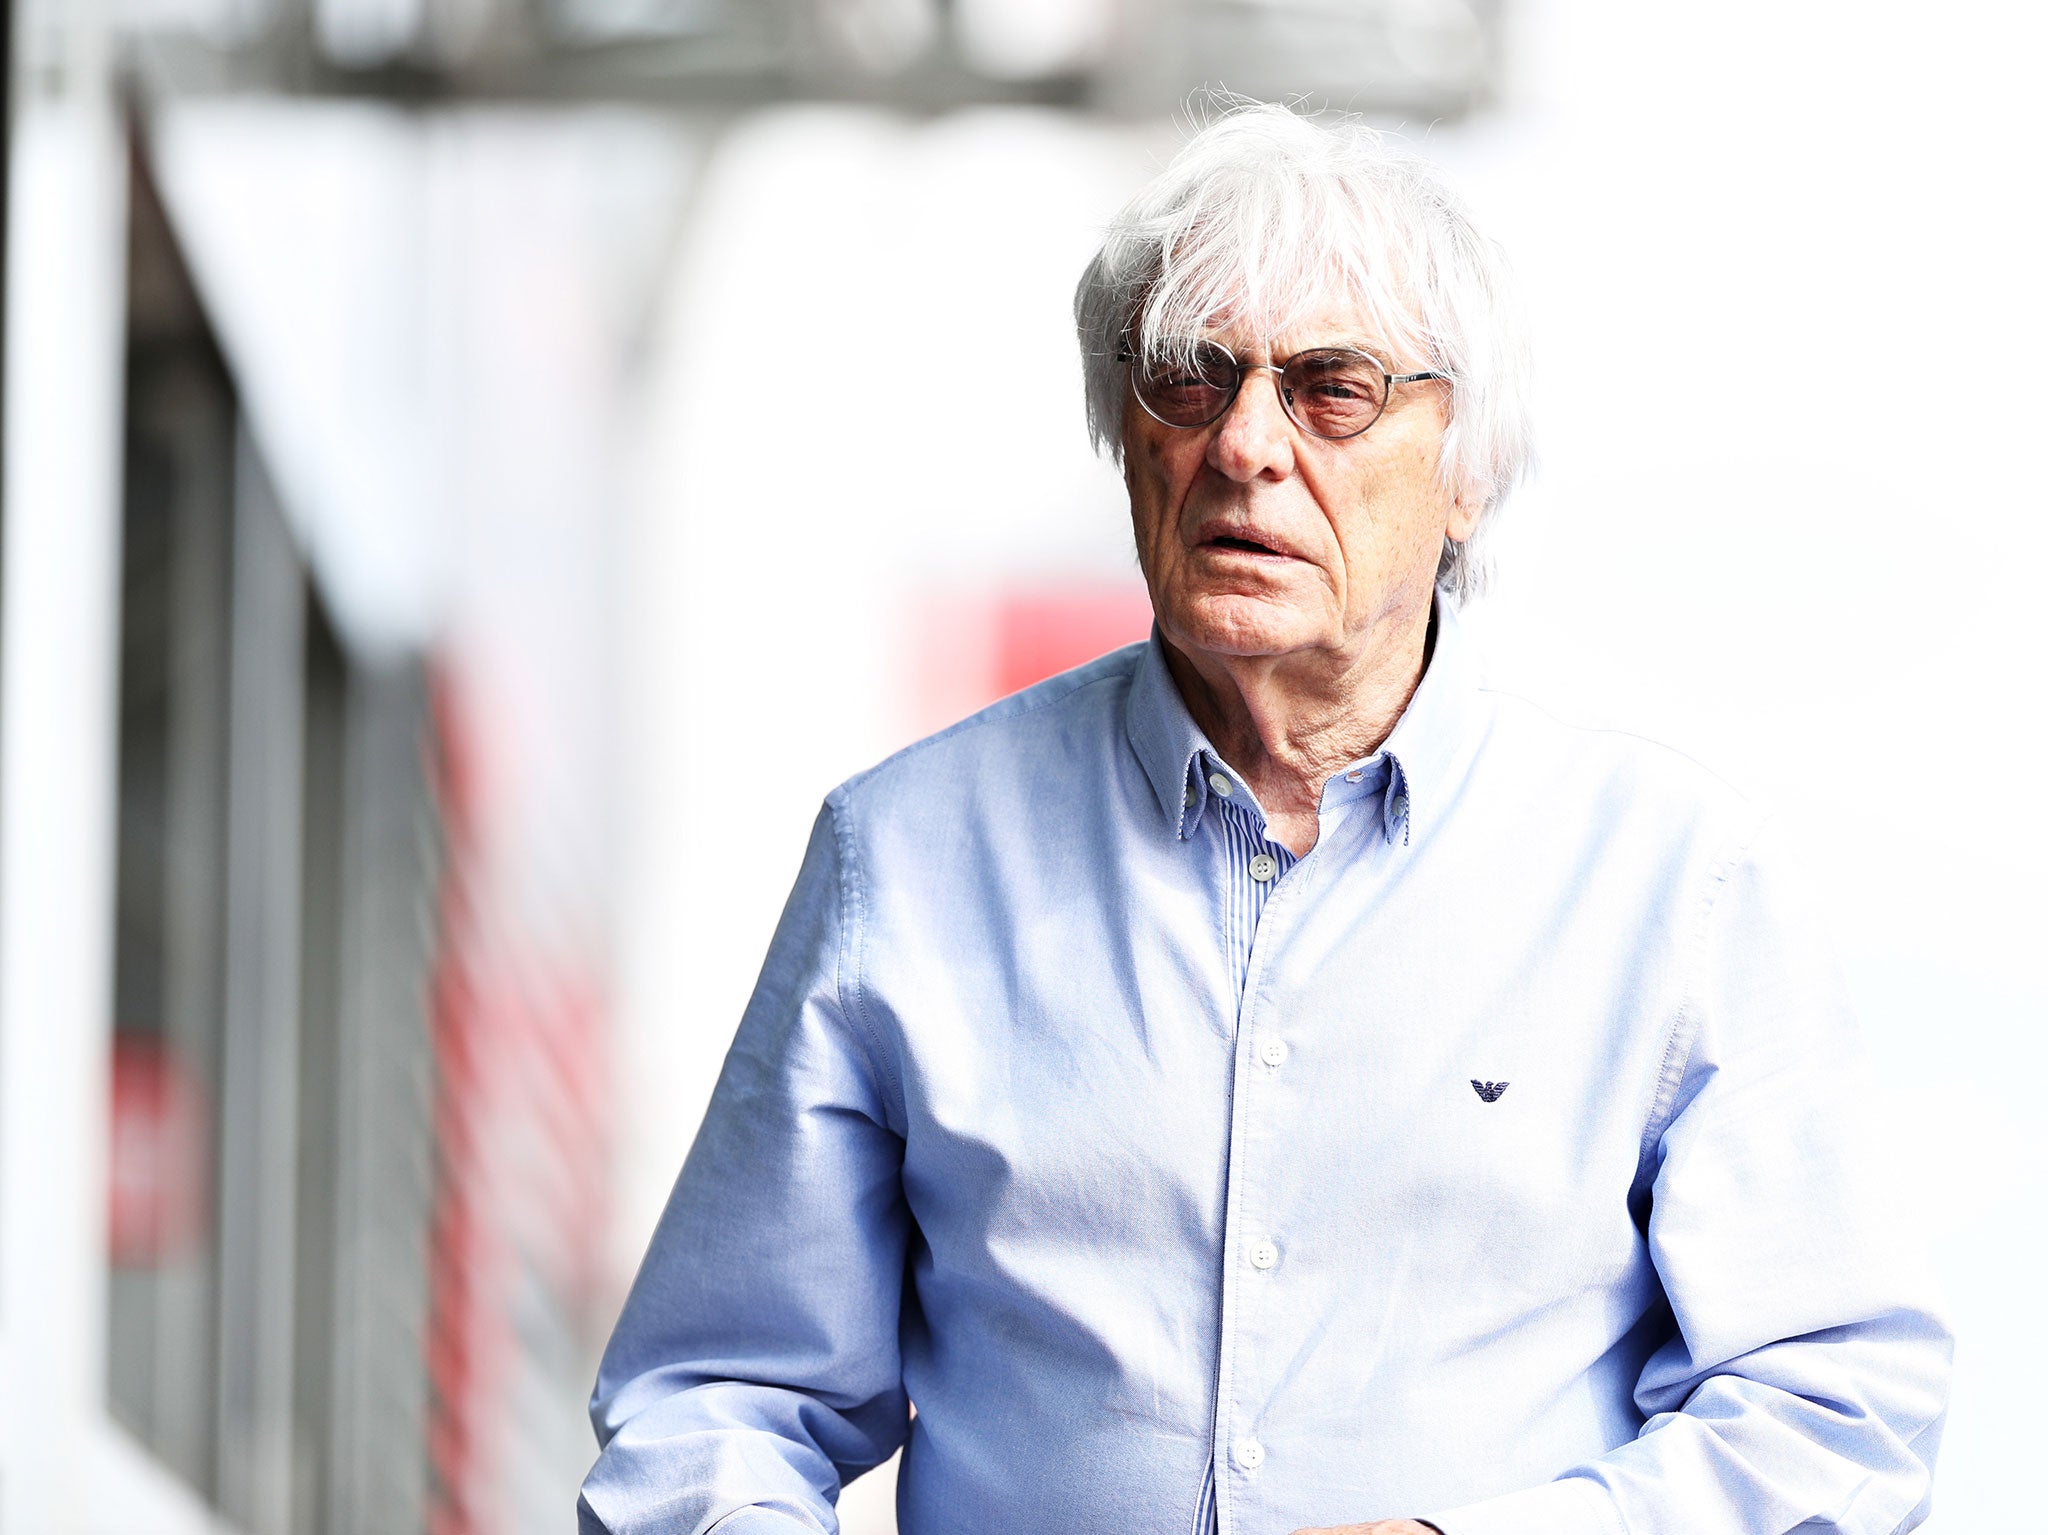 Bernie Ecclestone at the Italian Grand Prix